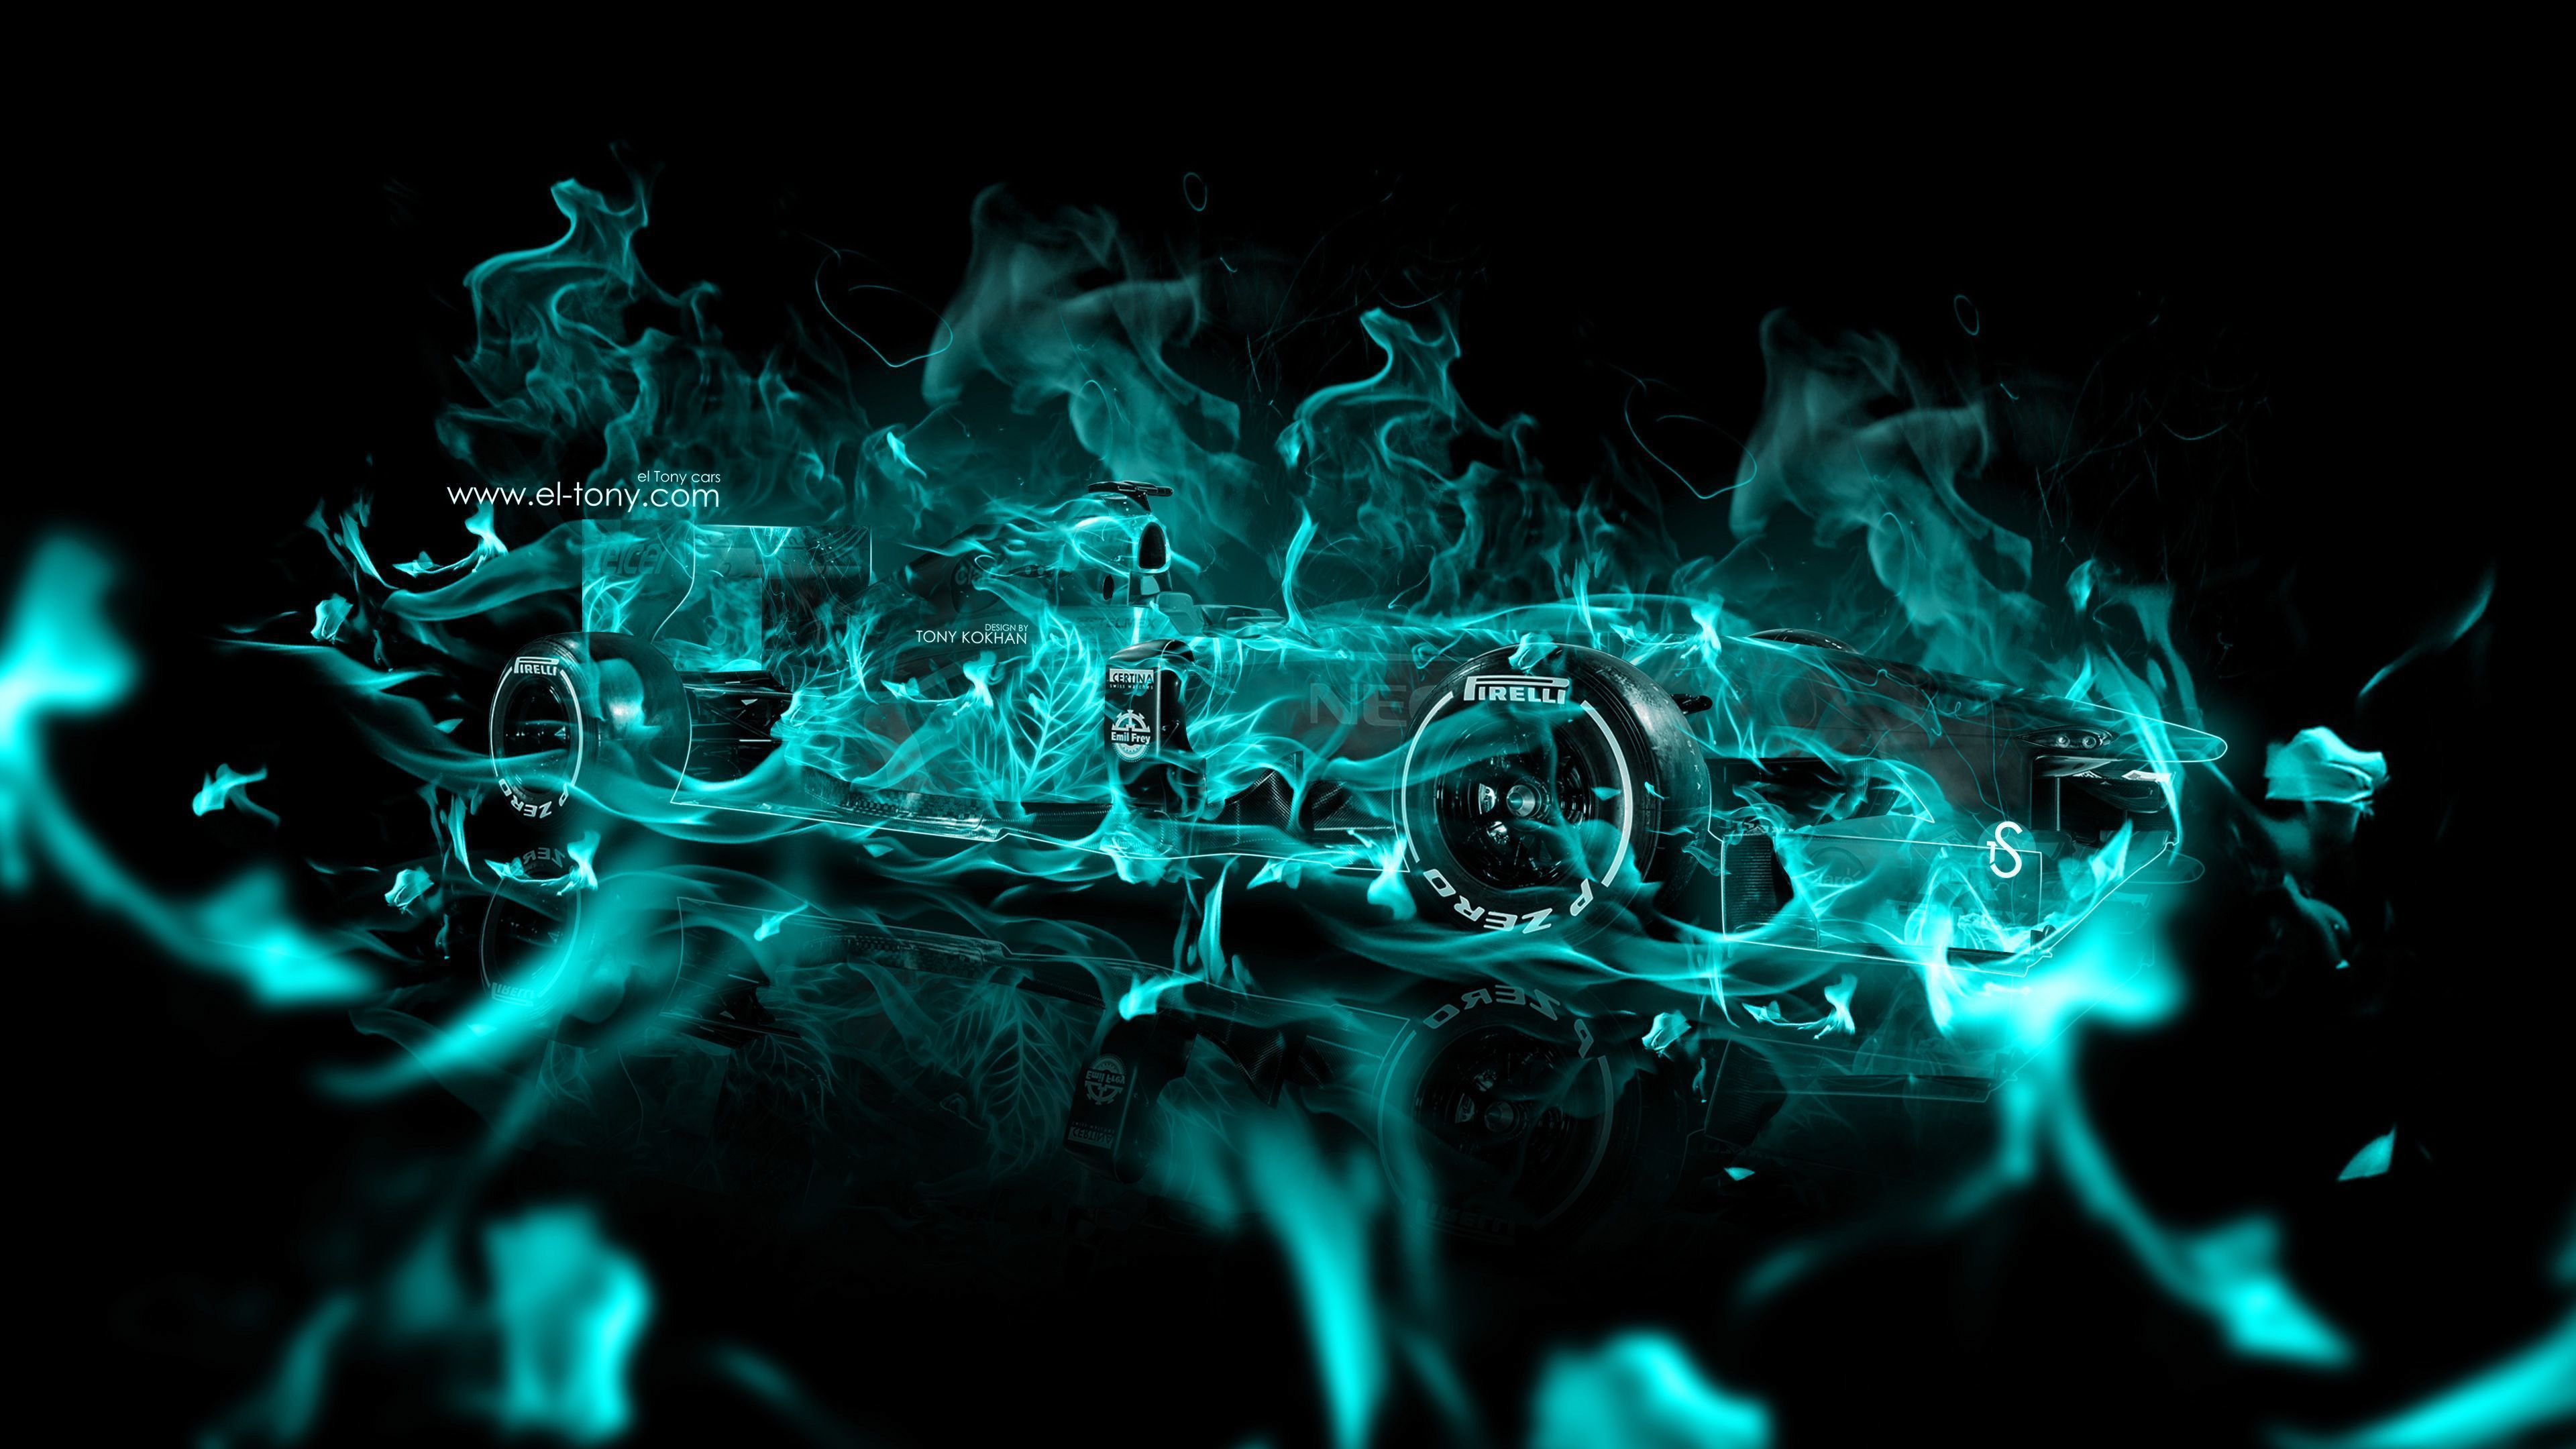 4K Wallpapers F1 Super Fire Abstract Car 2015 « el Tony